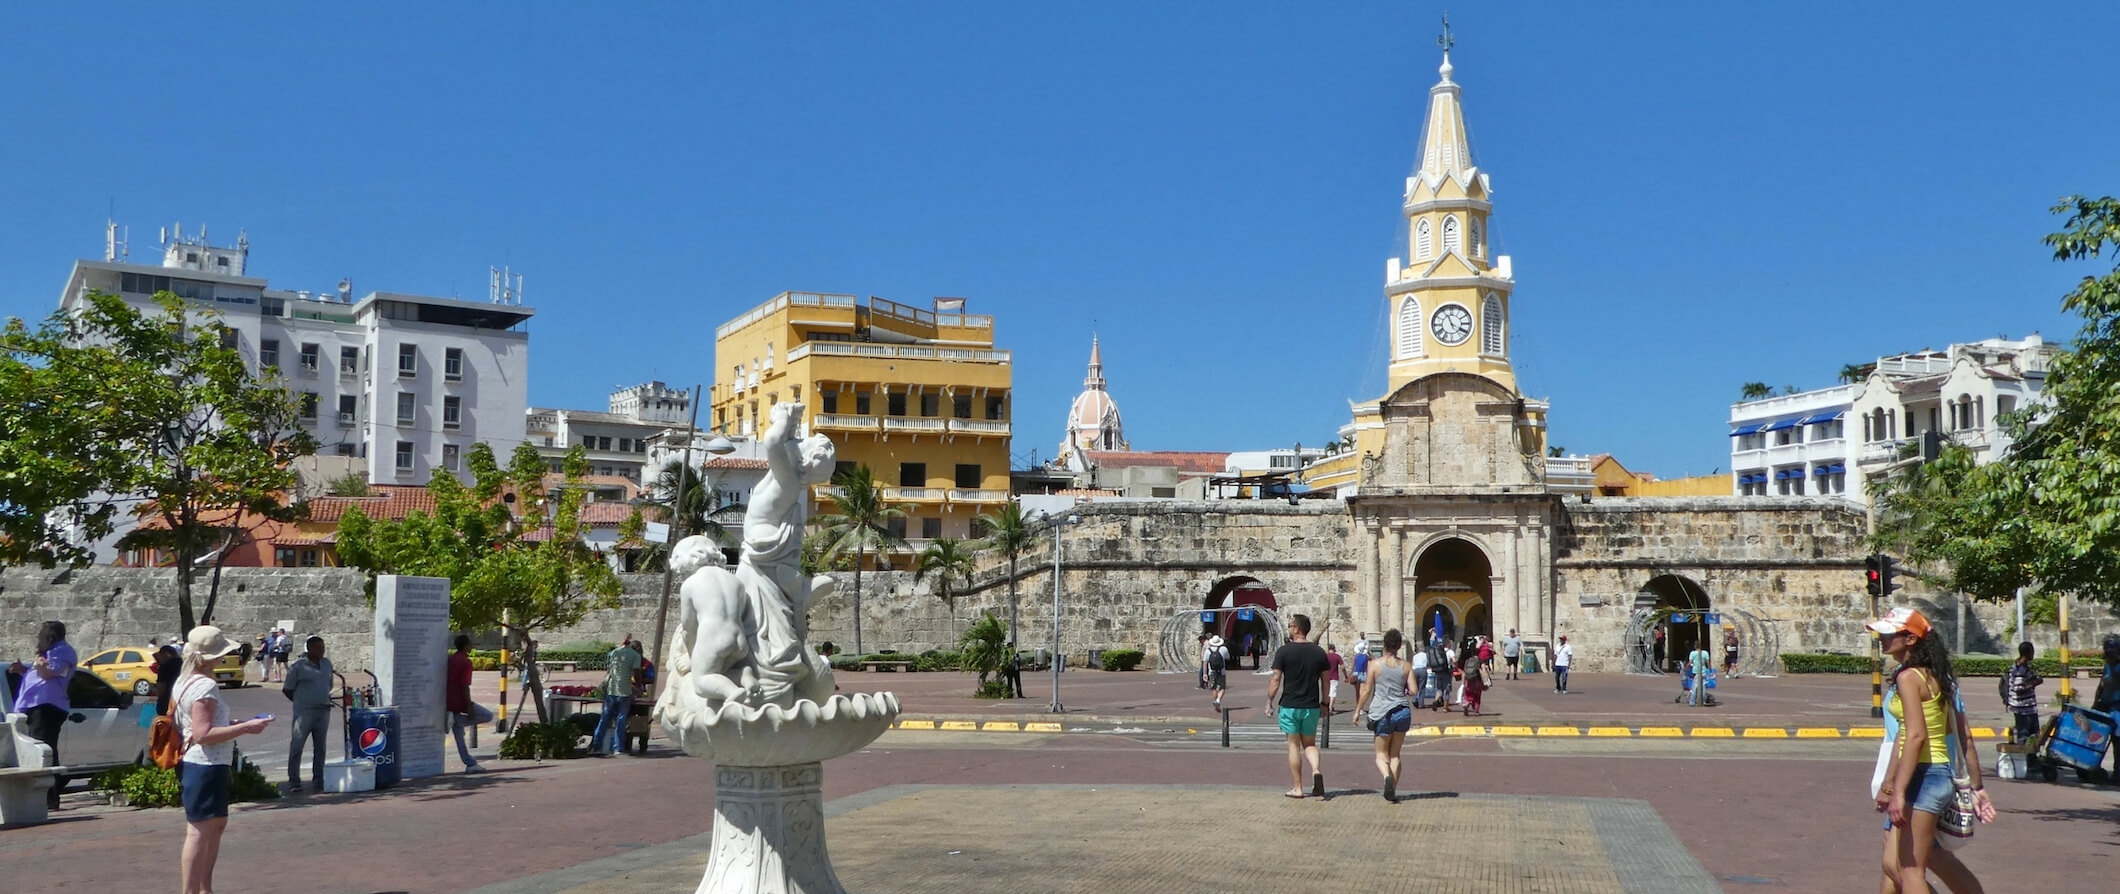 A city in Cartagena